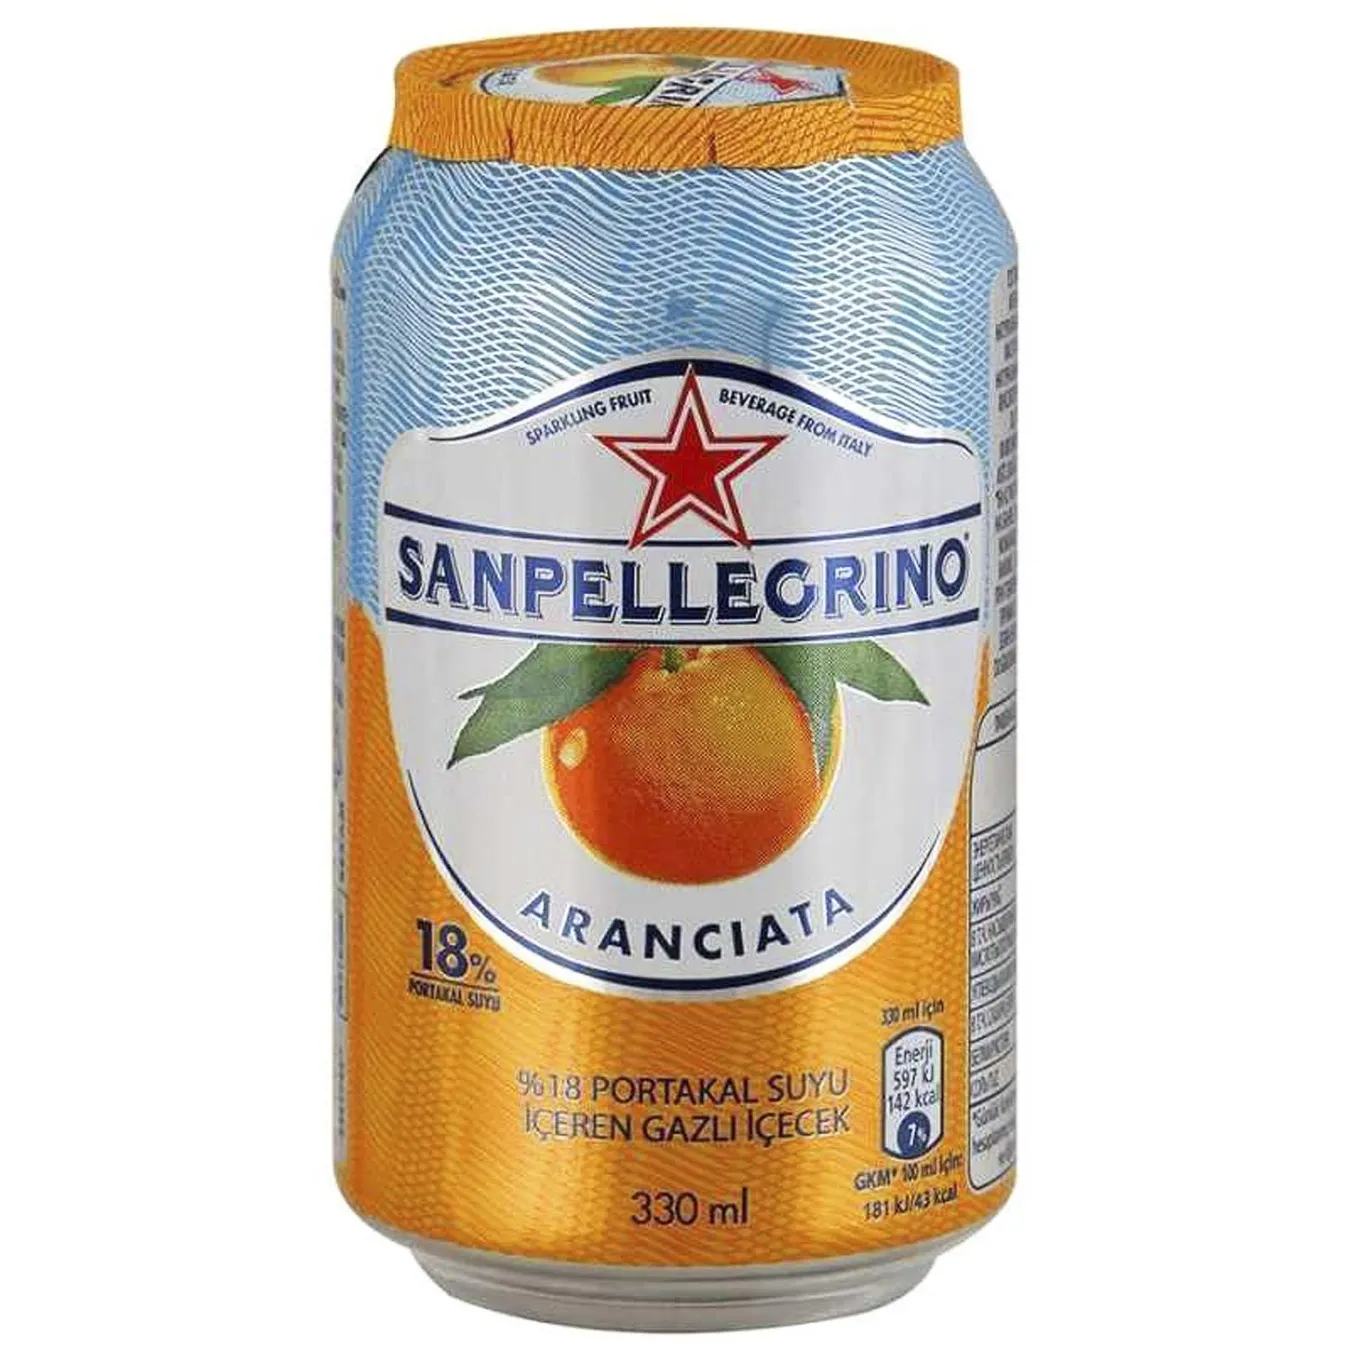 S. Pellegrino Aranciata orange carbonated beverage 330ml
